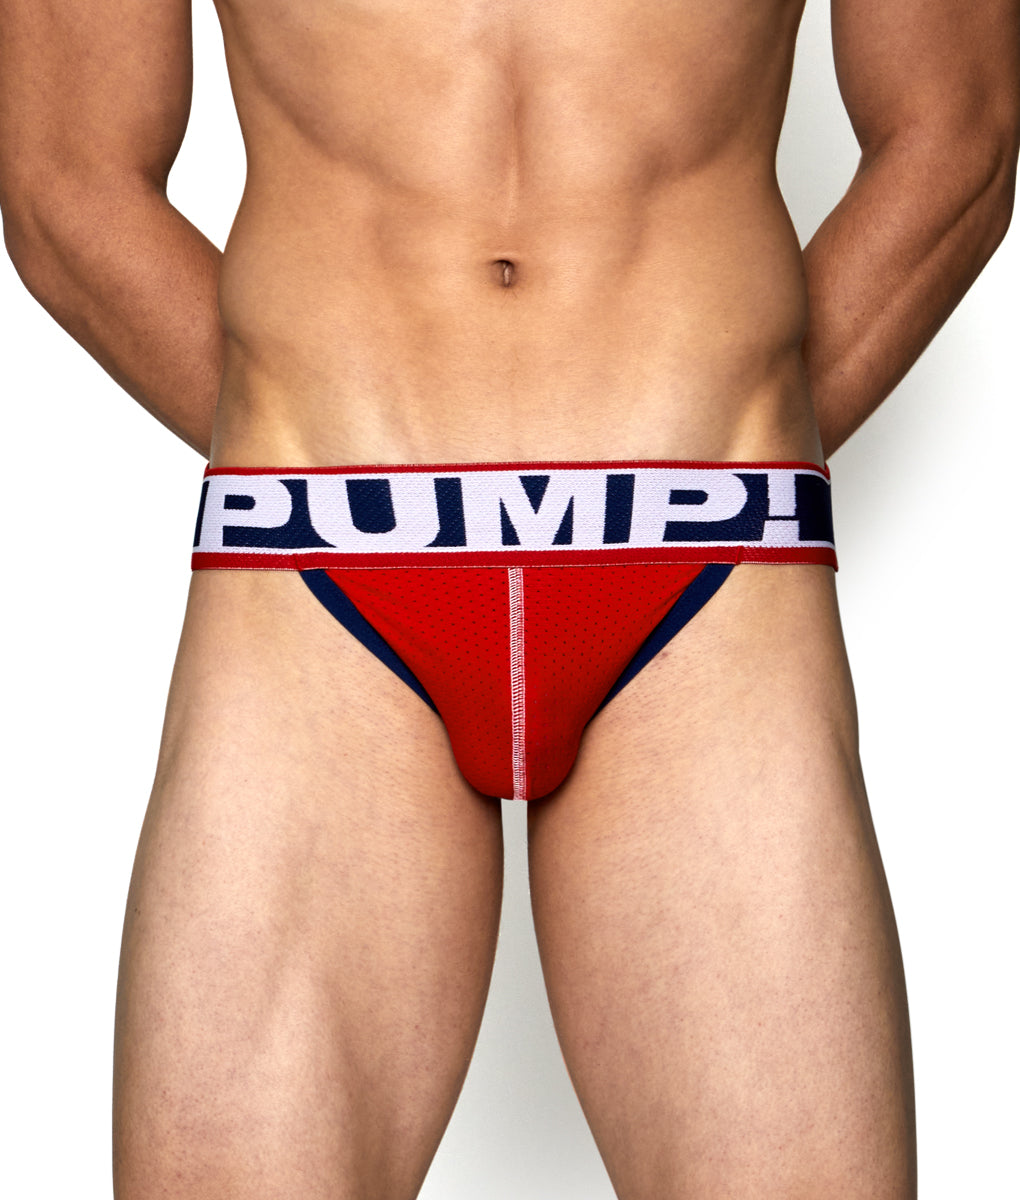 PUMP! Fever Jockstrap - Underwear Expert